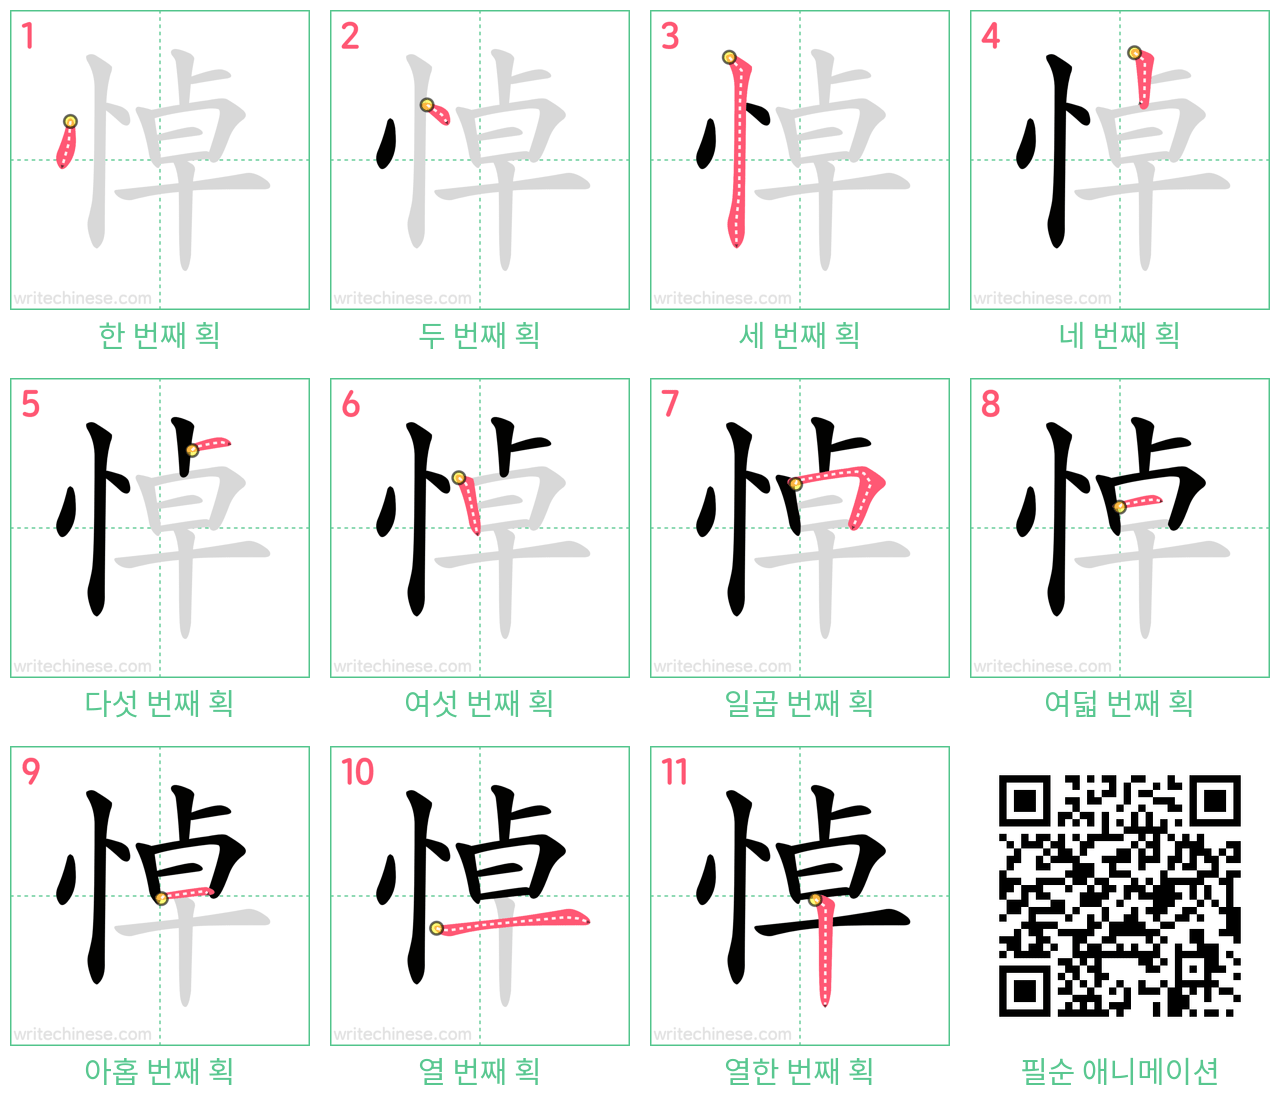 悼 step-by-step stroke order diagrams